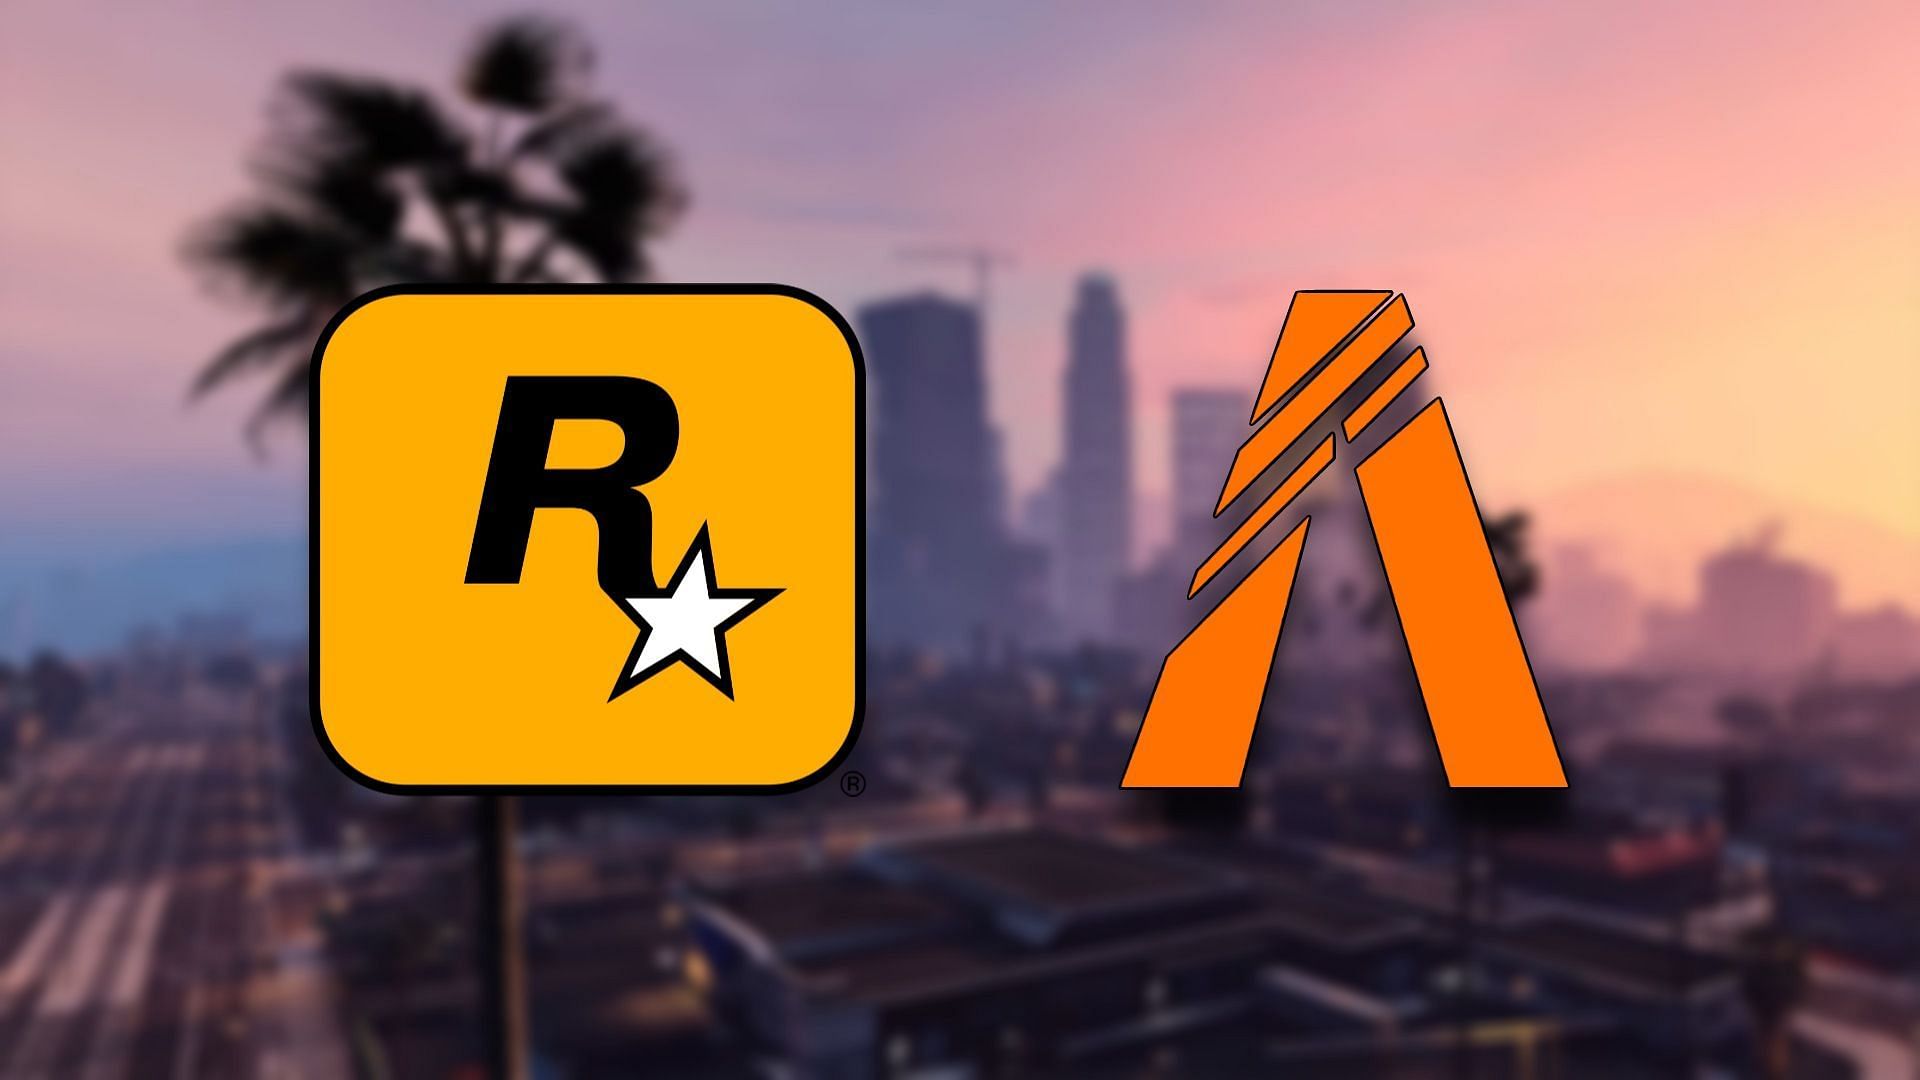 Remember, FiveM is now under Rockstar Games (Image via Rockstar Games)